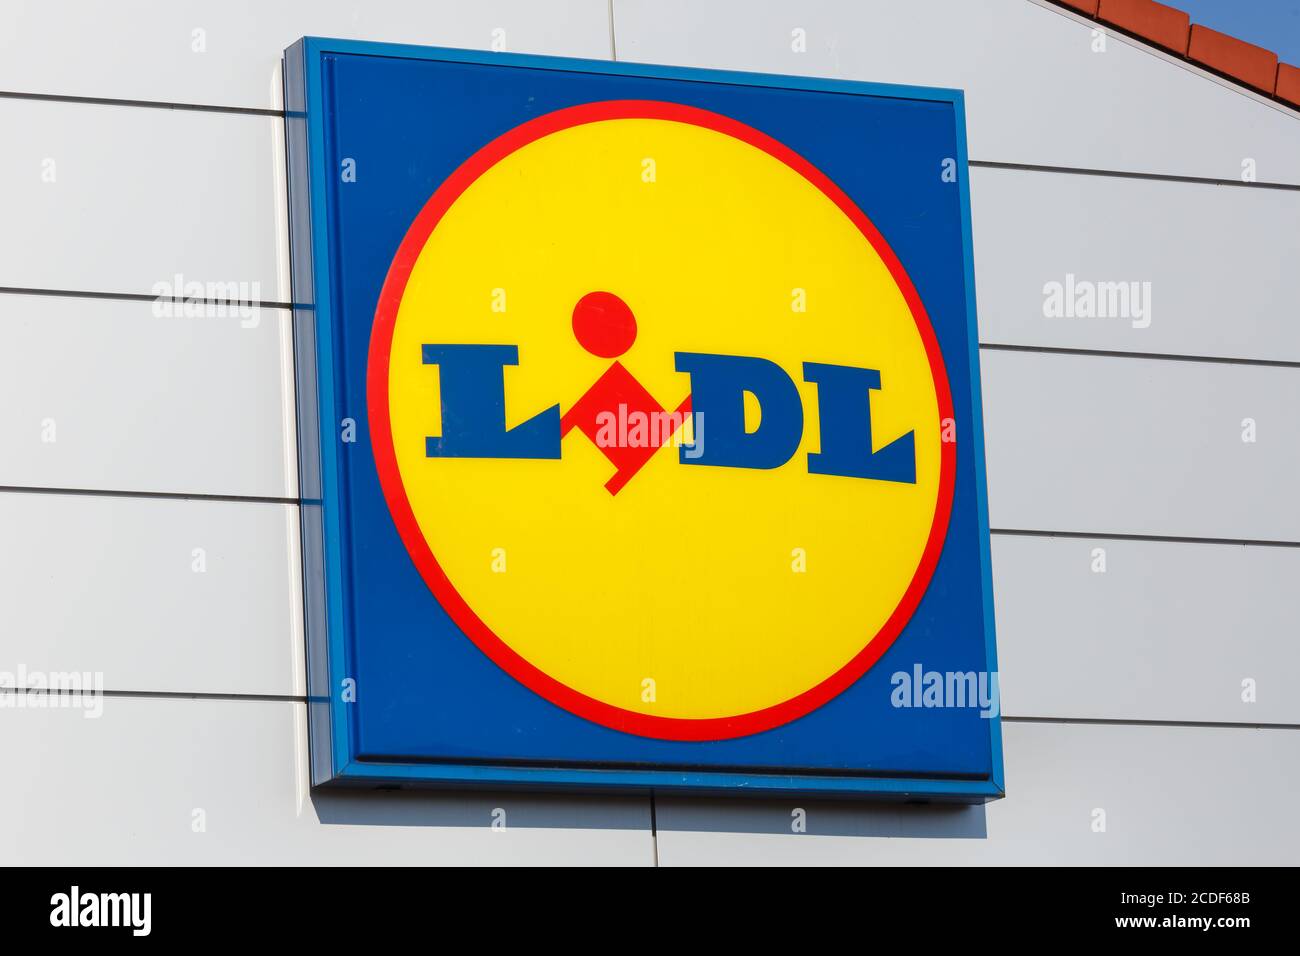 Stuttgart, Allemagne - 17 mai 2020: Logo Lidl enseigne supermarché discount discounter en Allemagne. Banque D'Images